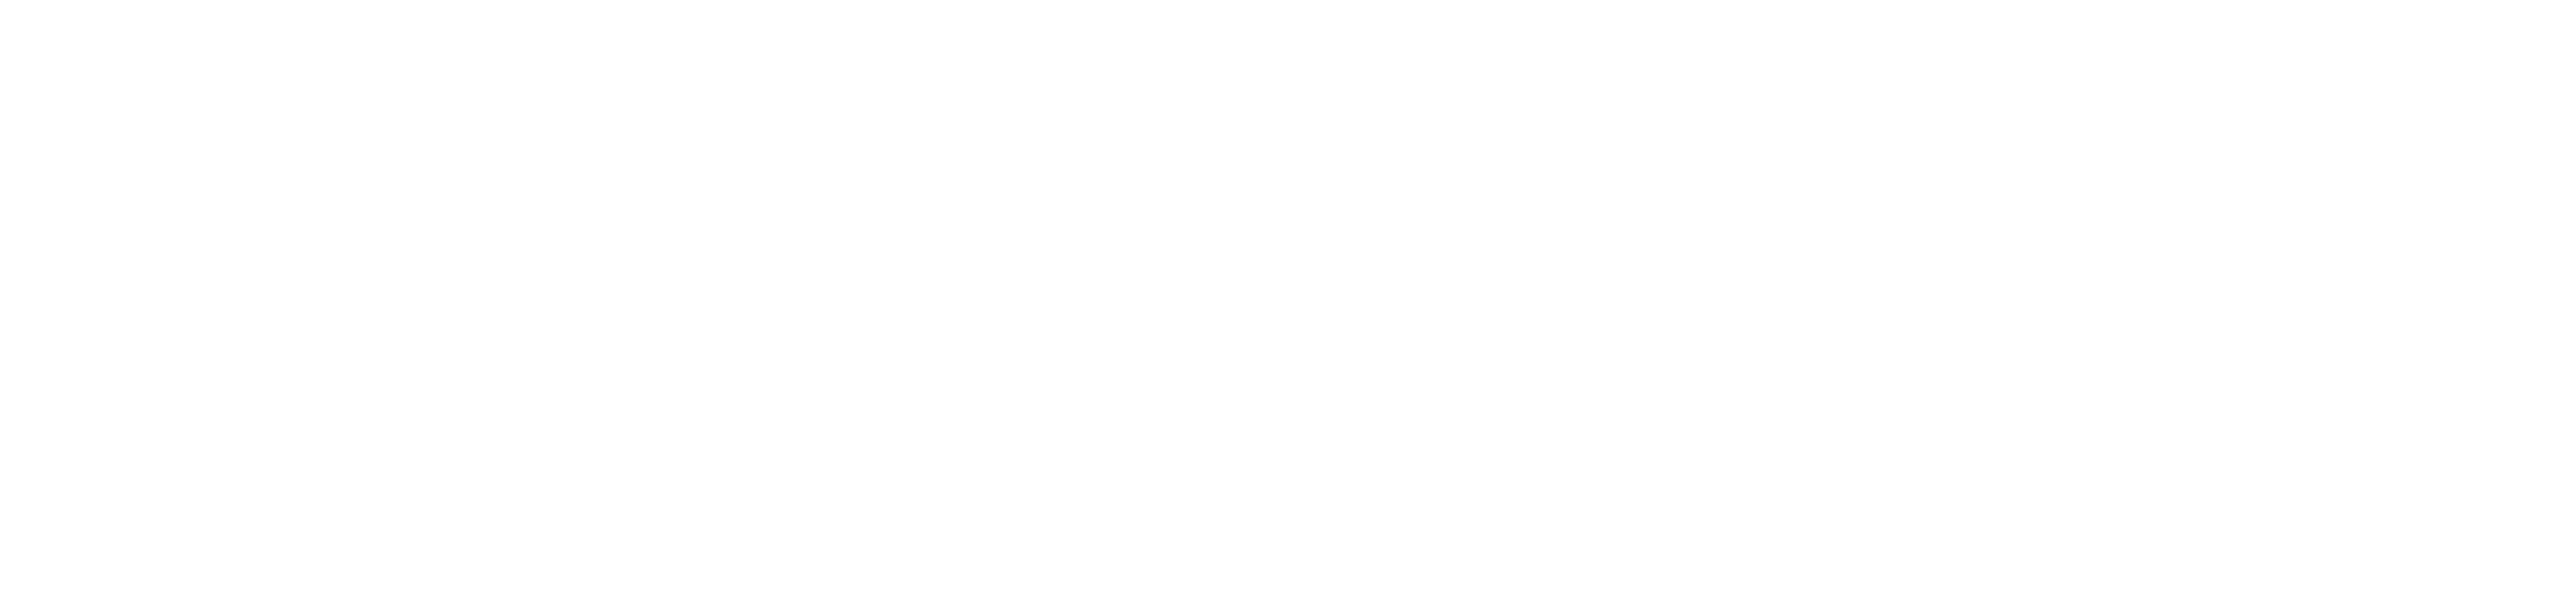 CellPOS Logo